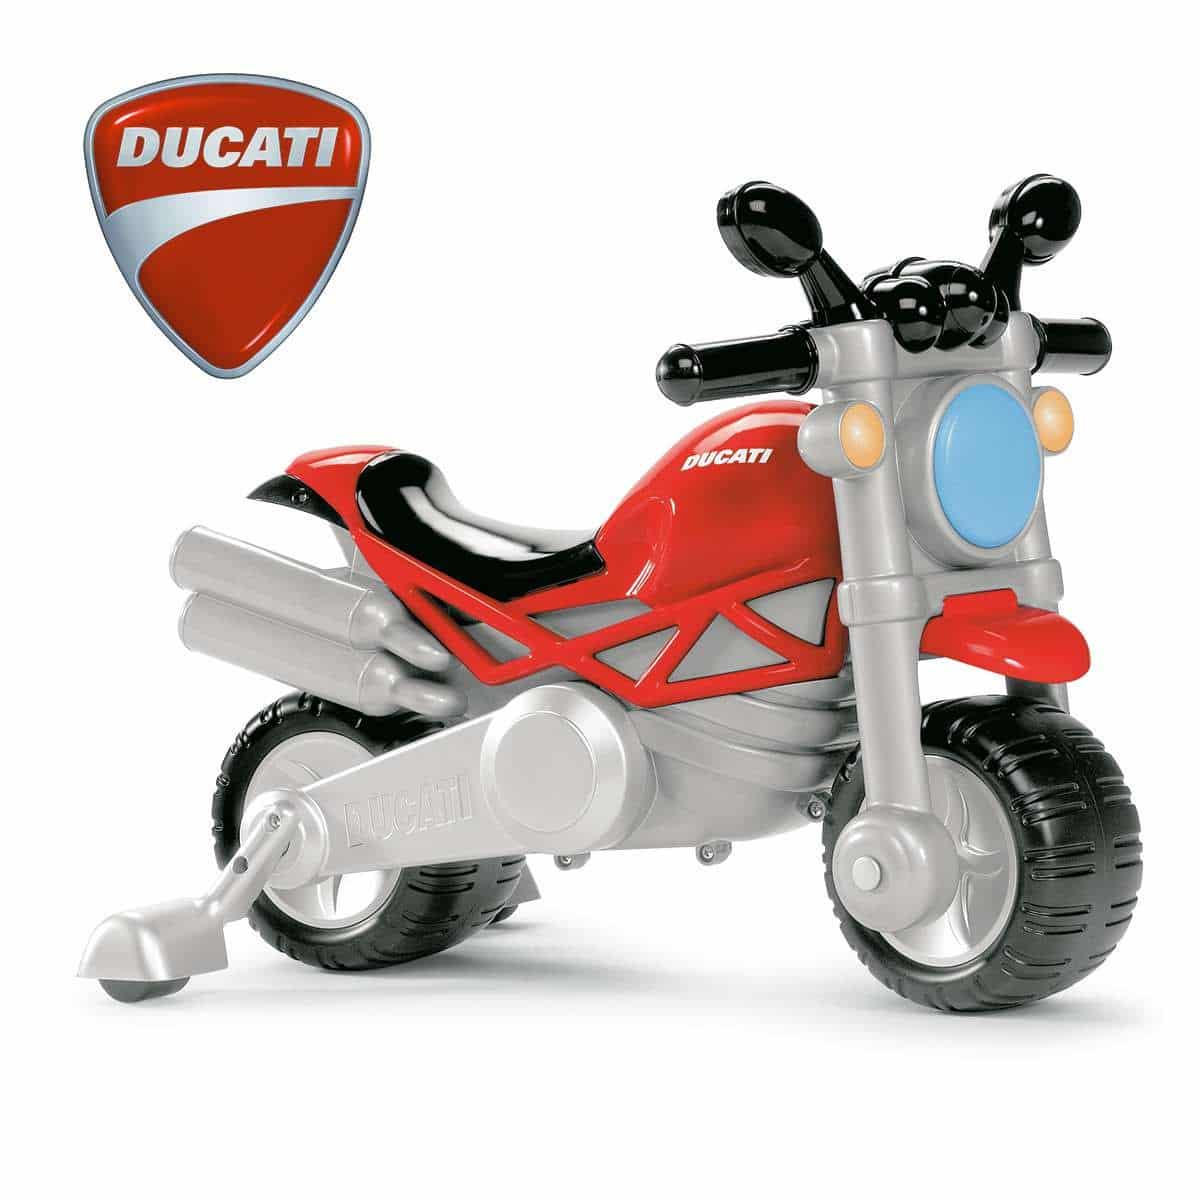 ducati-monster-1